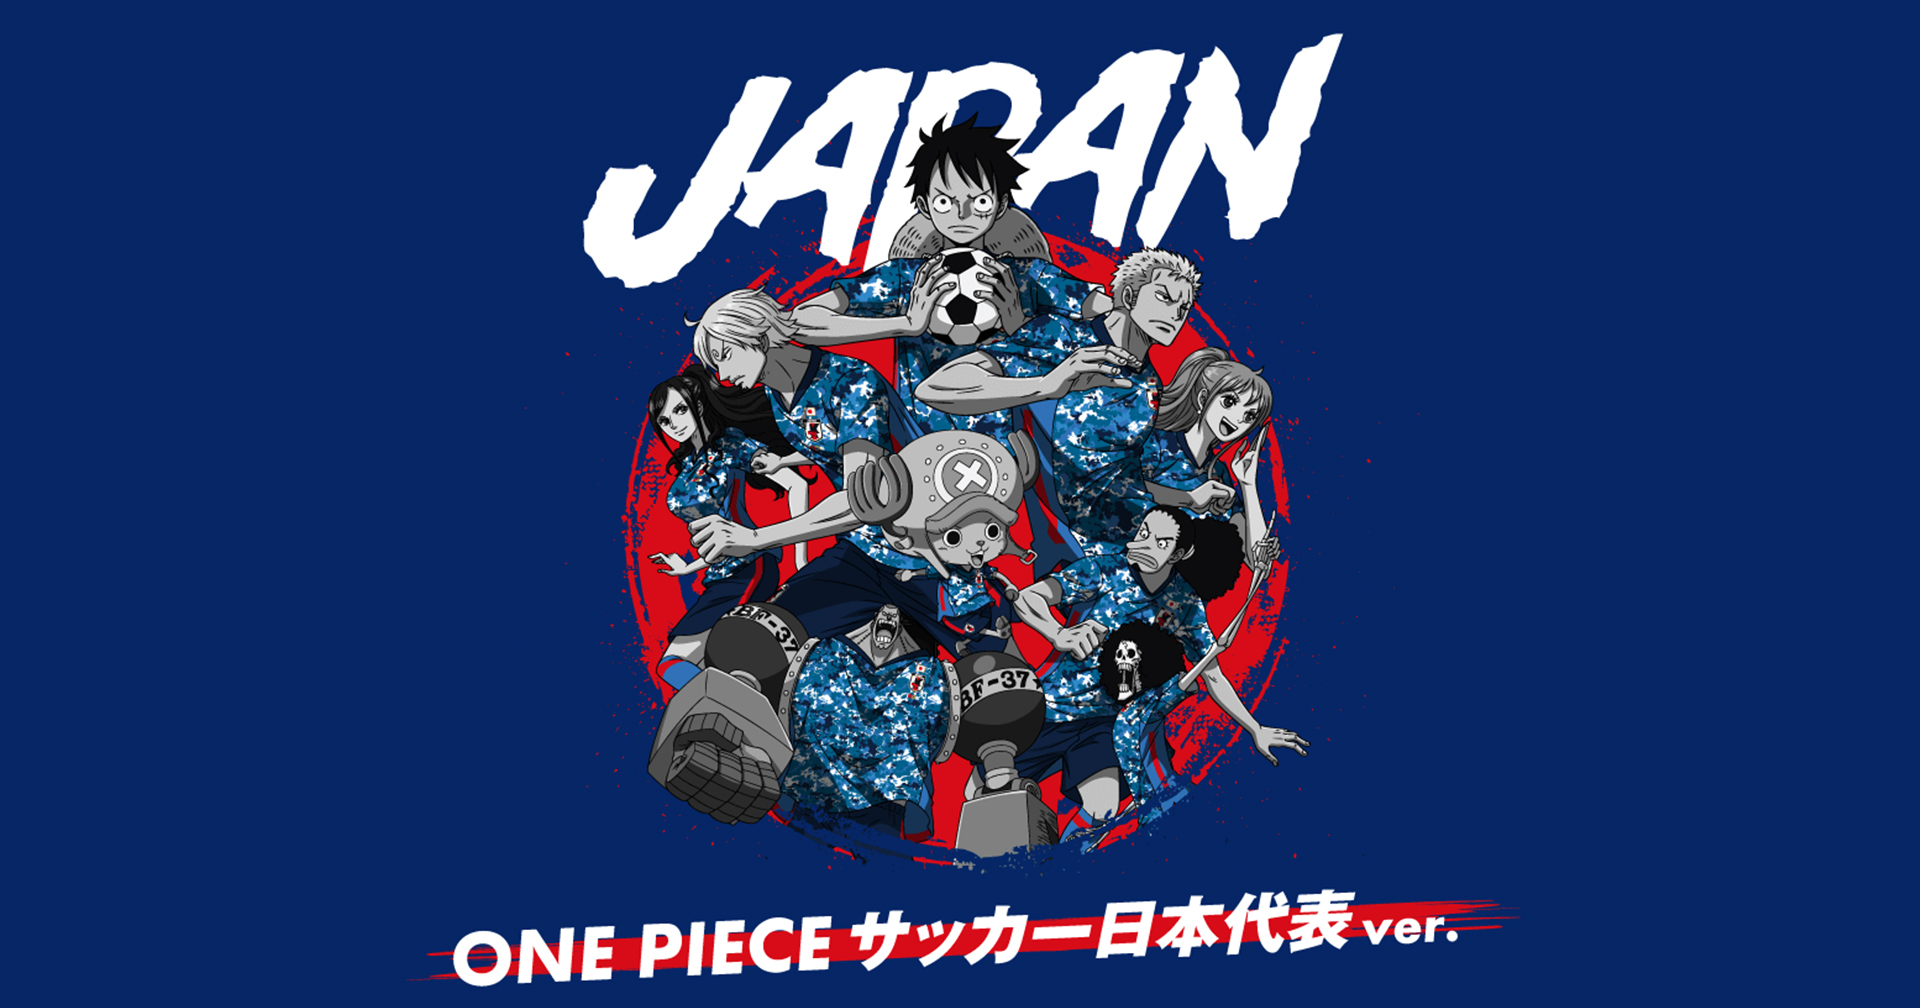 ครบรอบ 100 ปี สมาคมฟุตบอลญี่ปุ่น ดึงลูกเรือหมวกฟางจาก One Piece ร่วมงาน